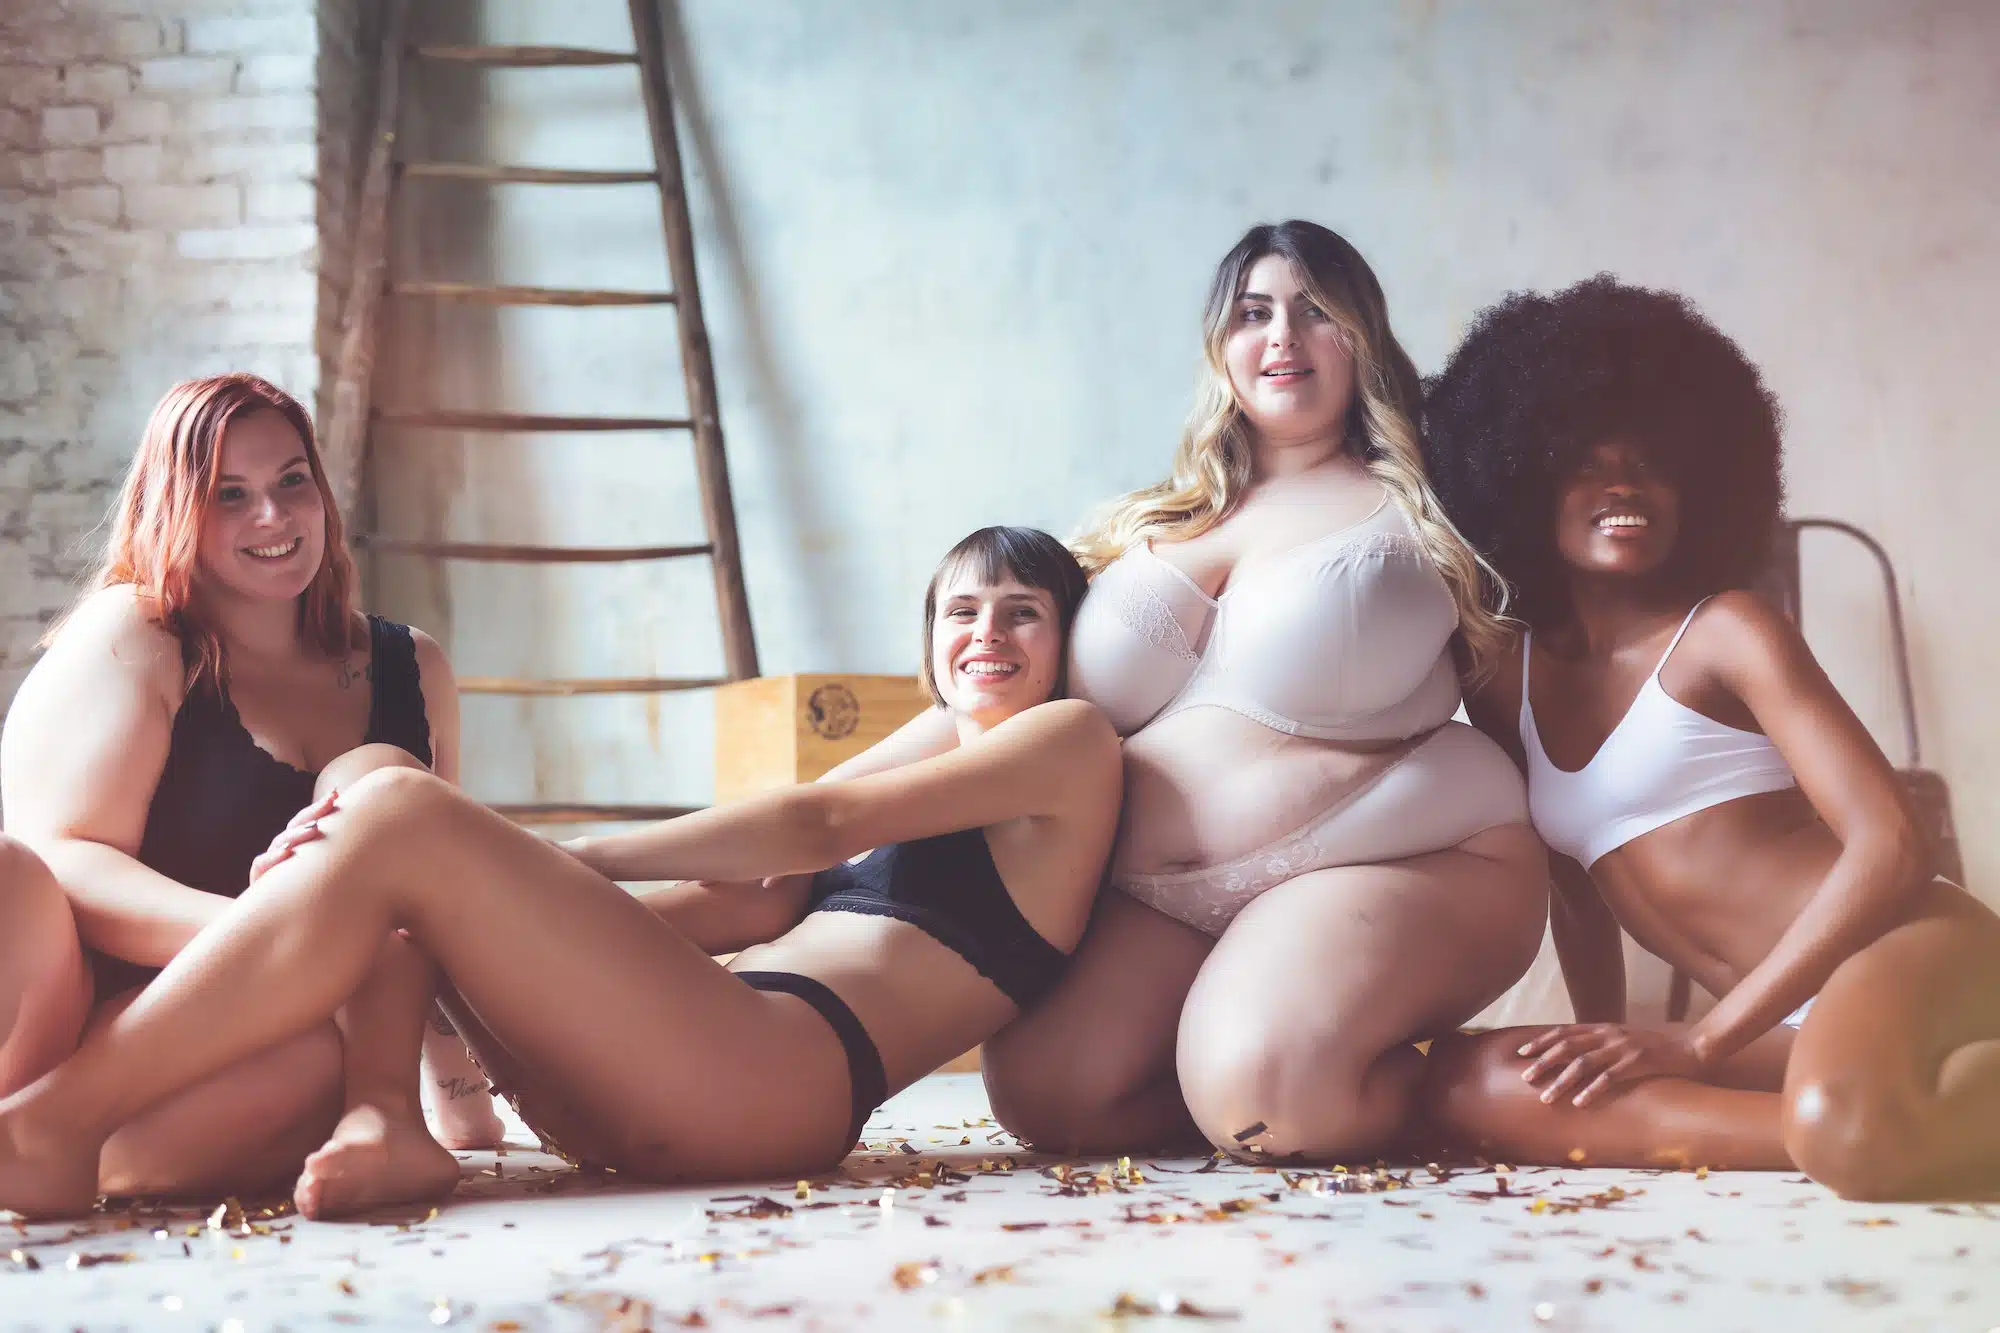 Die Ästhetik der menschlichen Körpers. Gruppe von vier Frauen mit unterschiedlichen Körpern, die nackte Dessous tragen und zusammen posieren